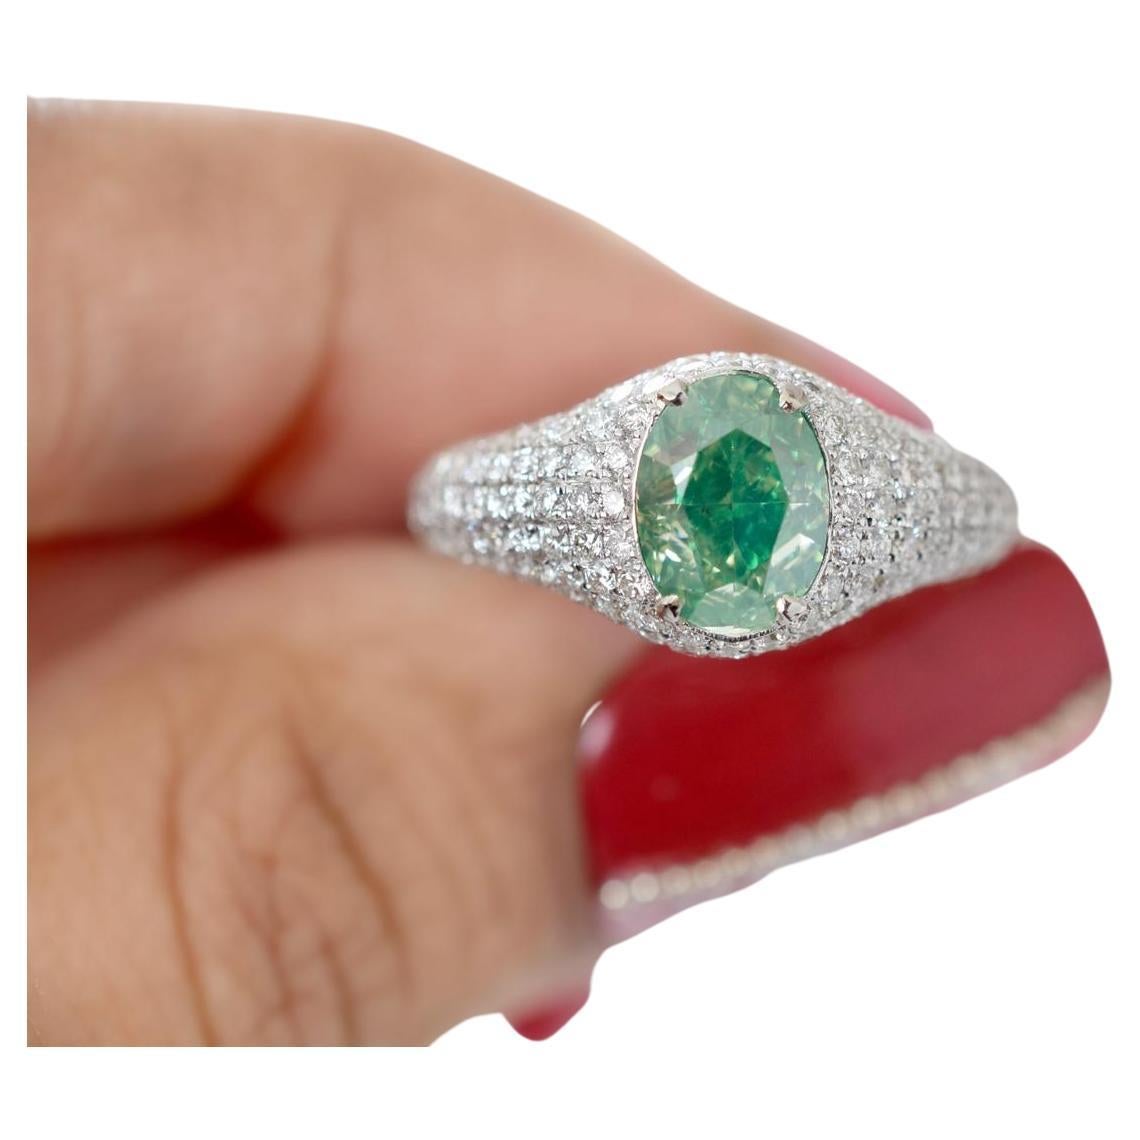 1.52 Carat Fancy Green Yellow Diamond Ring I1 Clarity GIA Certified